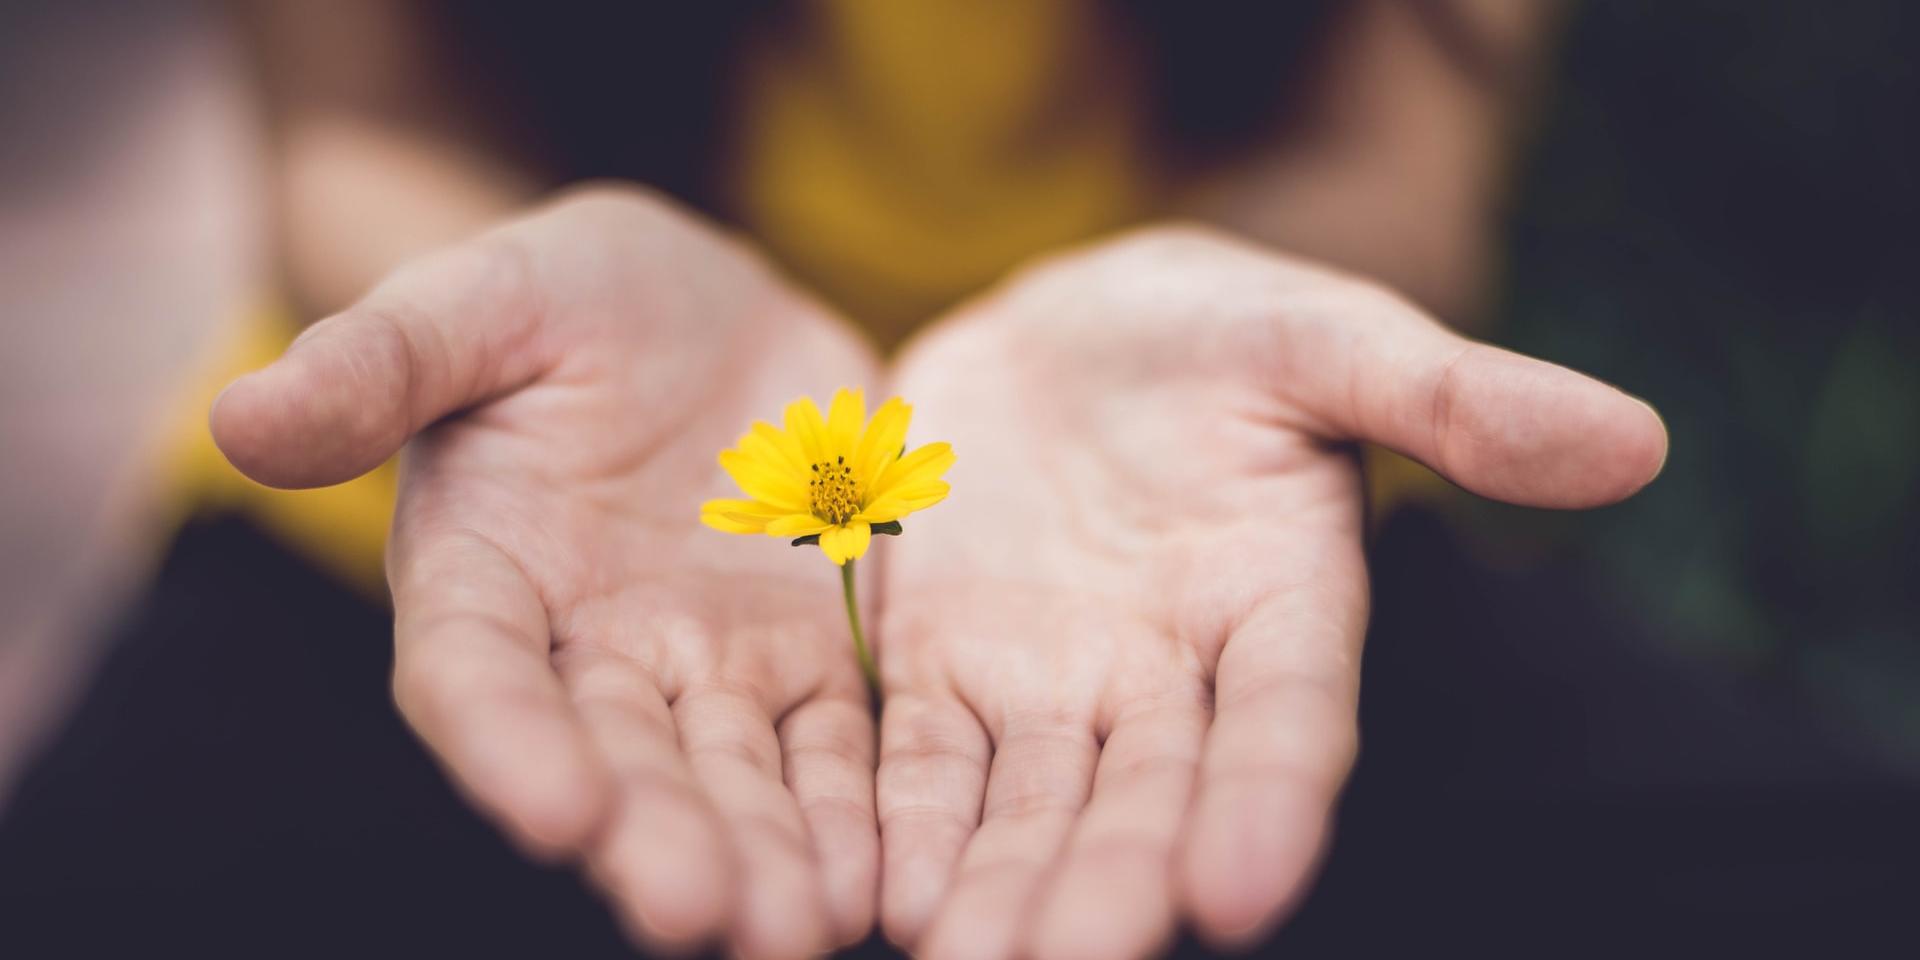 Man sieht ein geöffnetes Händepaar, welches eine kleine gelbe Blume zart umfängt.